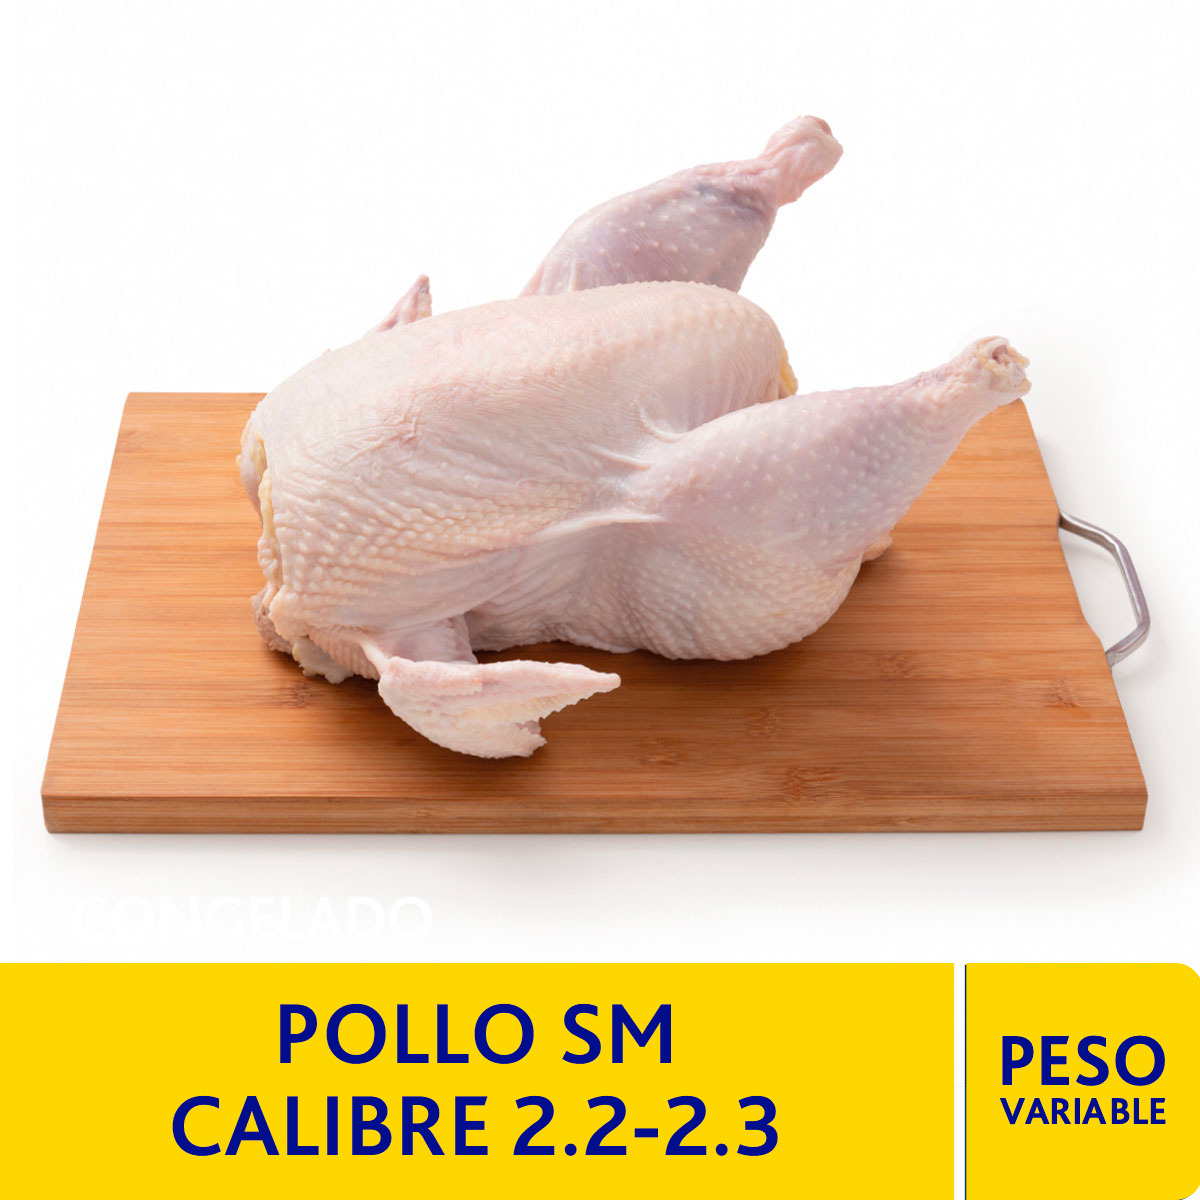 Pollo SM Calibre 2.2-2.3 kg.